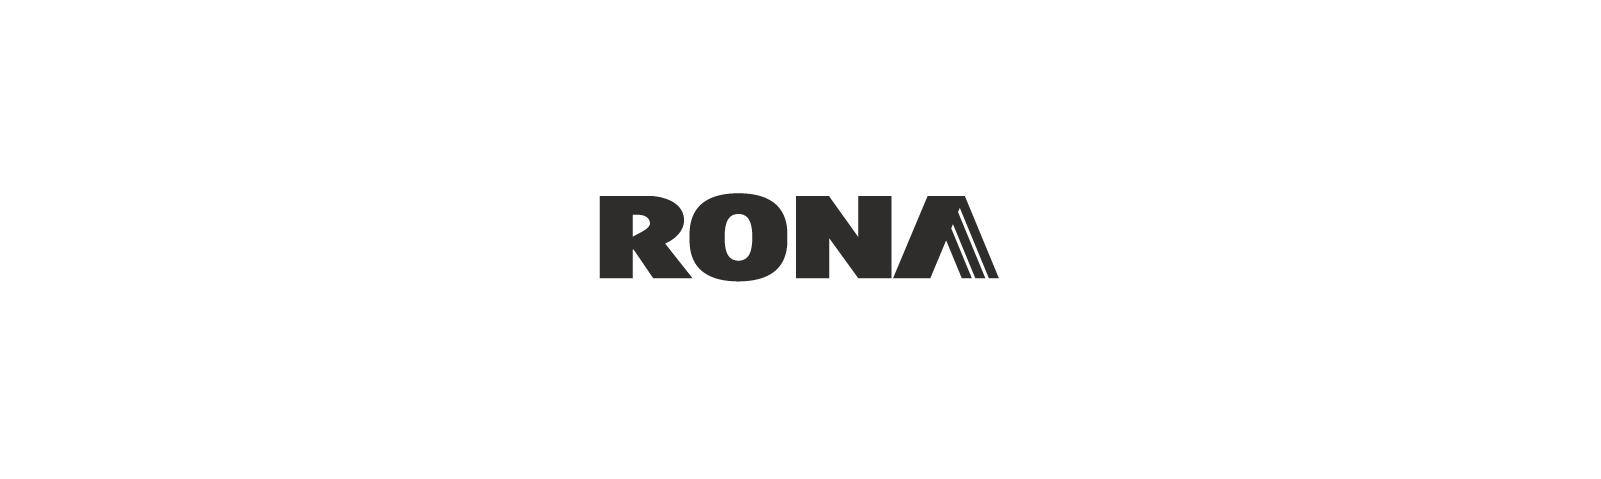 Rona-Logo